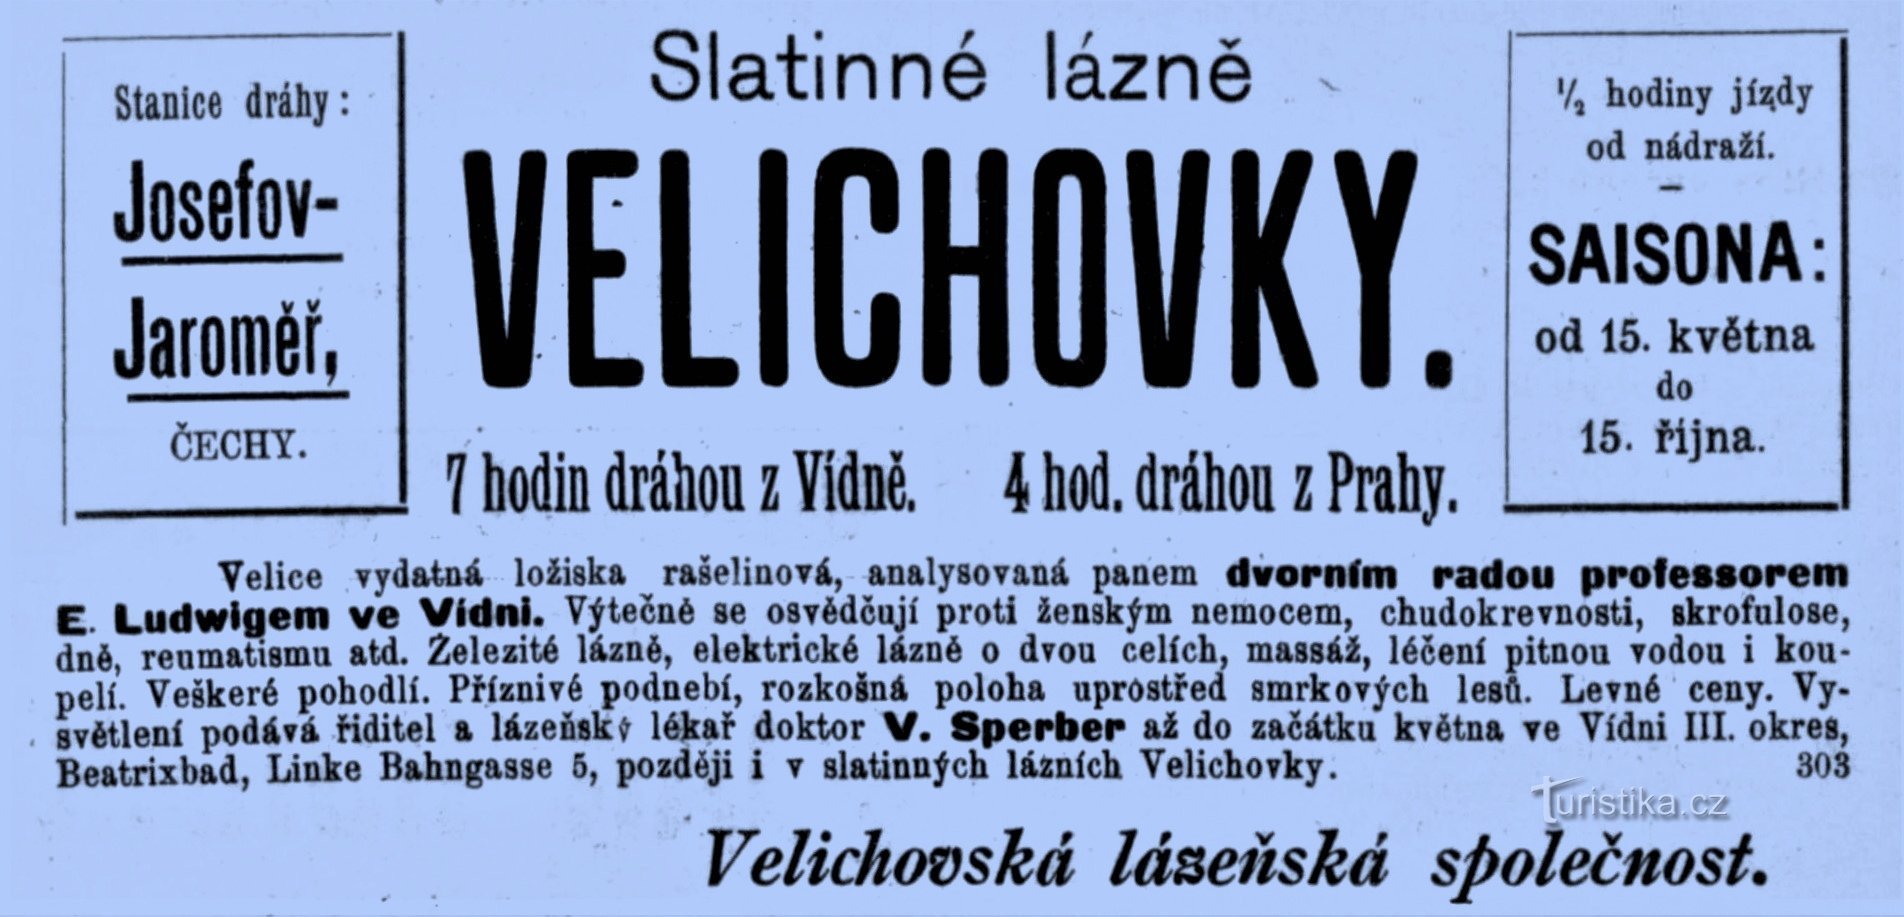 Quảng cáo của spa ở Velichovky từ năm 1898